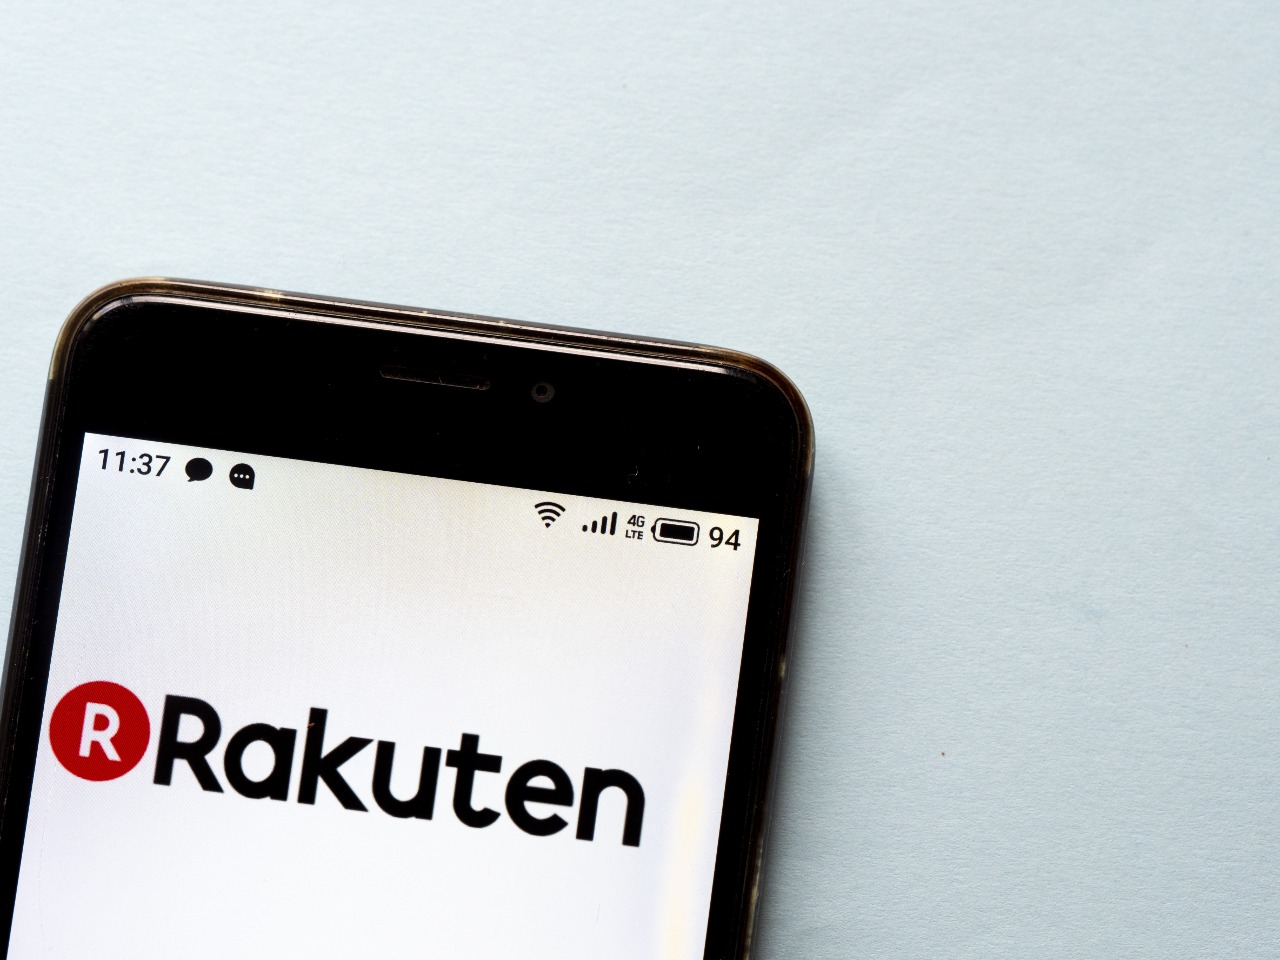 Rakuten shopping application for ecommerce in Japan